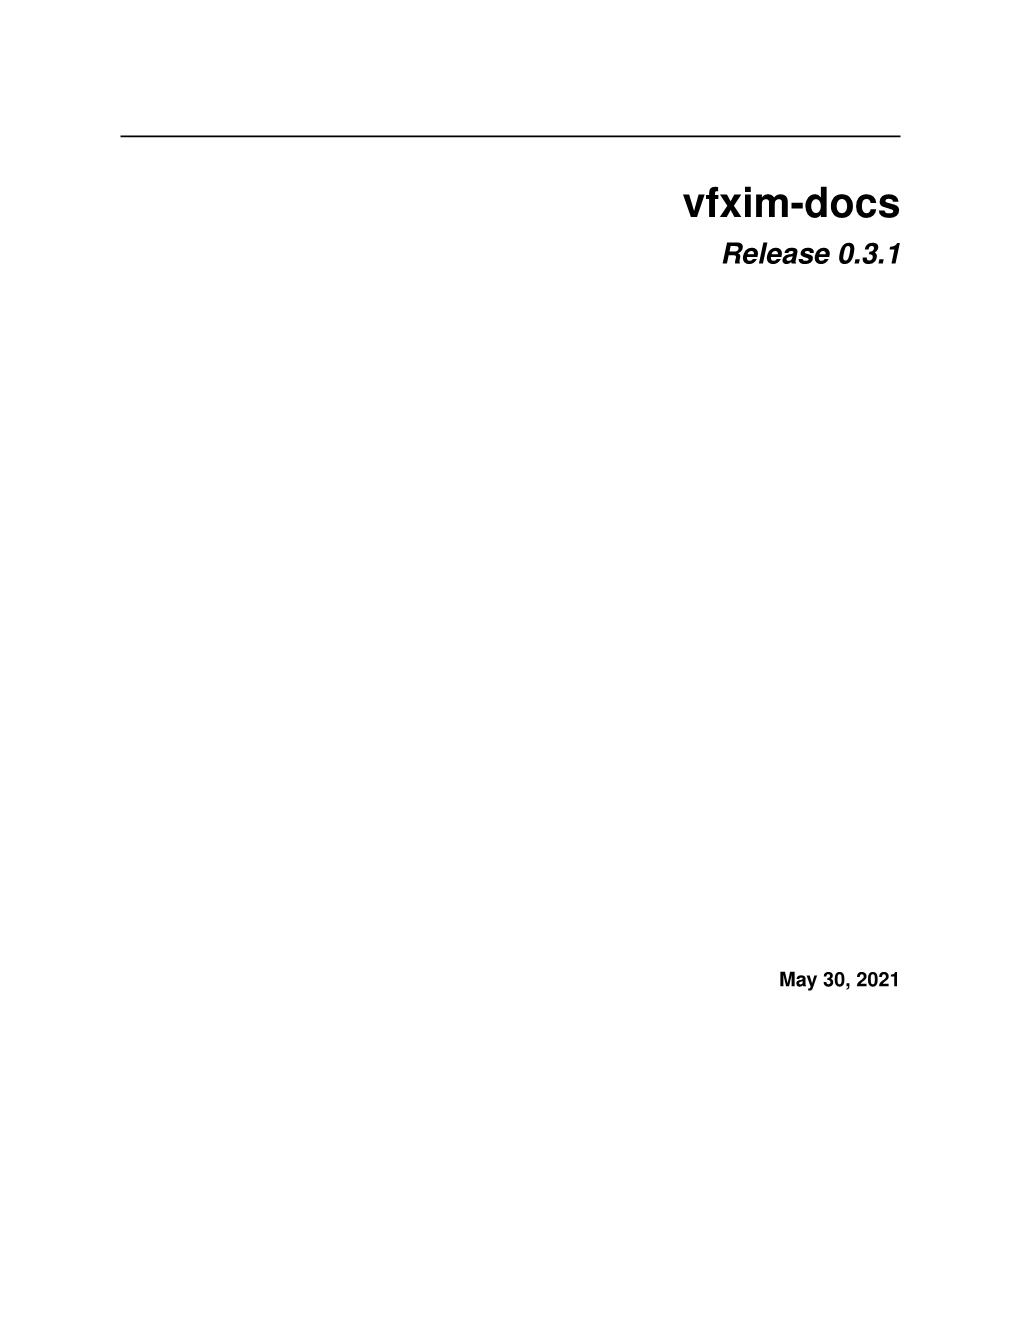 Vfxim-Docs Release 0.3.1